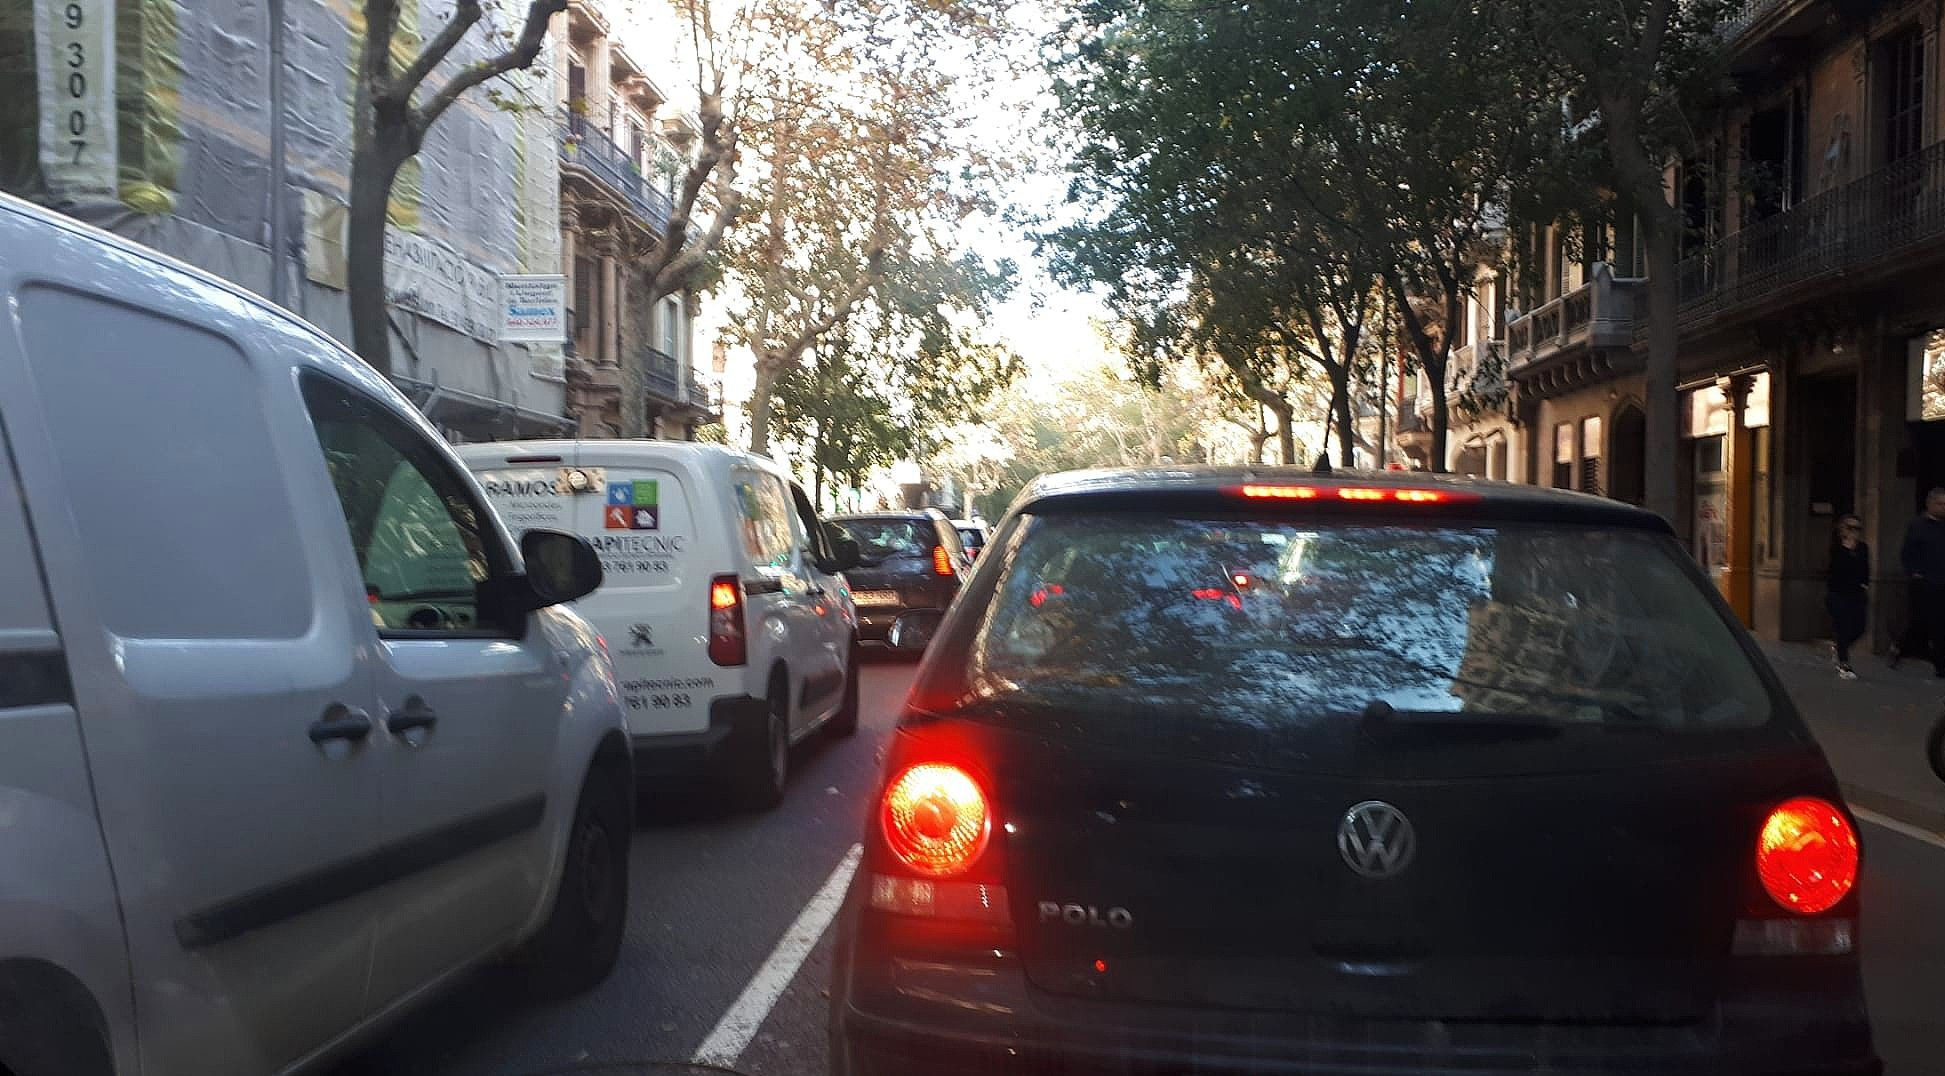 Tráfico en la calle de València tras el corte de Gran Via / METRÓPOLI